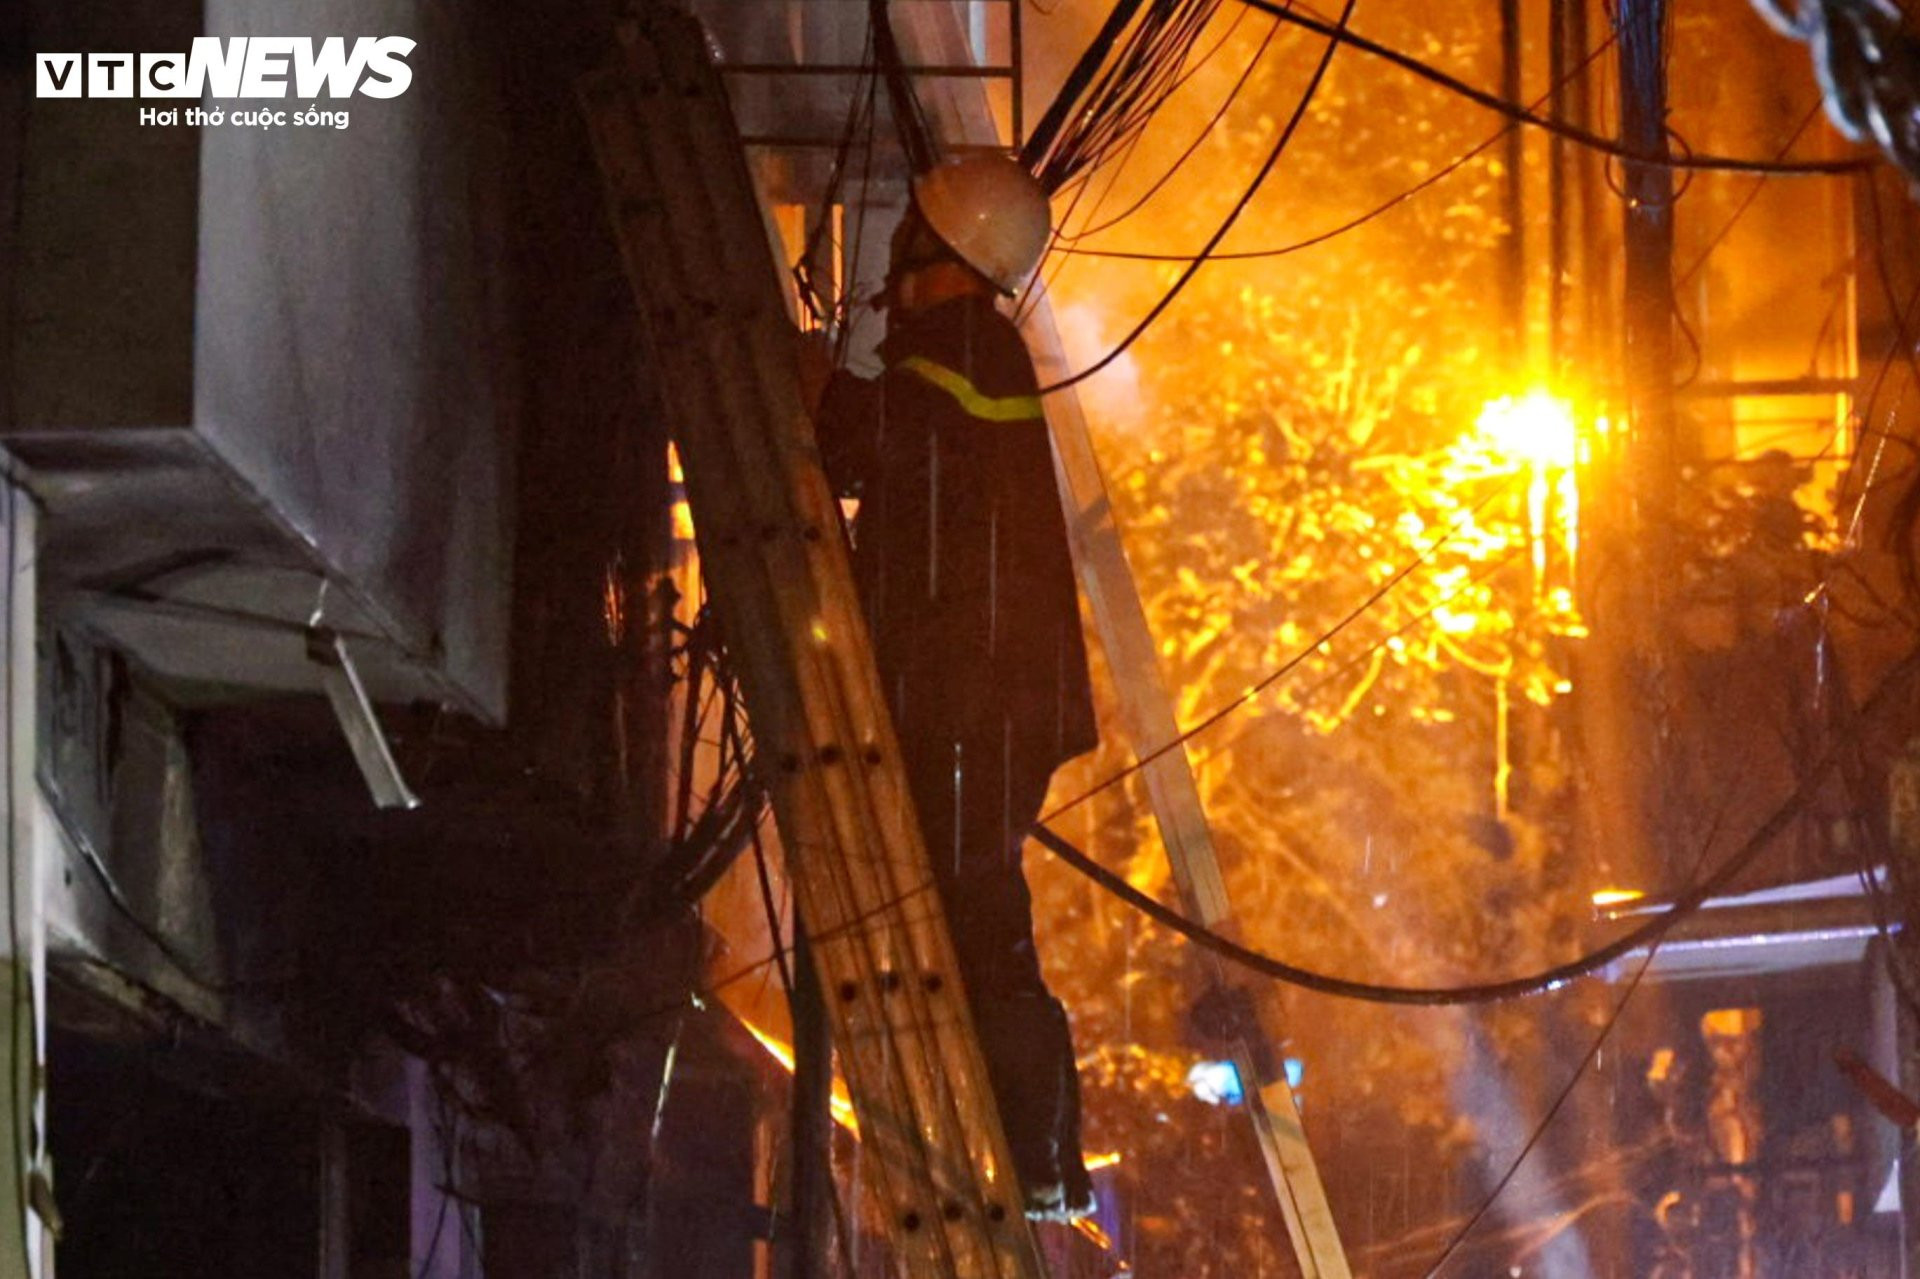 Hiện trường vụ cháy chung cư mini ở Hà Nội trong đêm, nhiều người ngất xỉu - 4